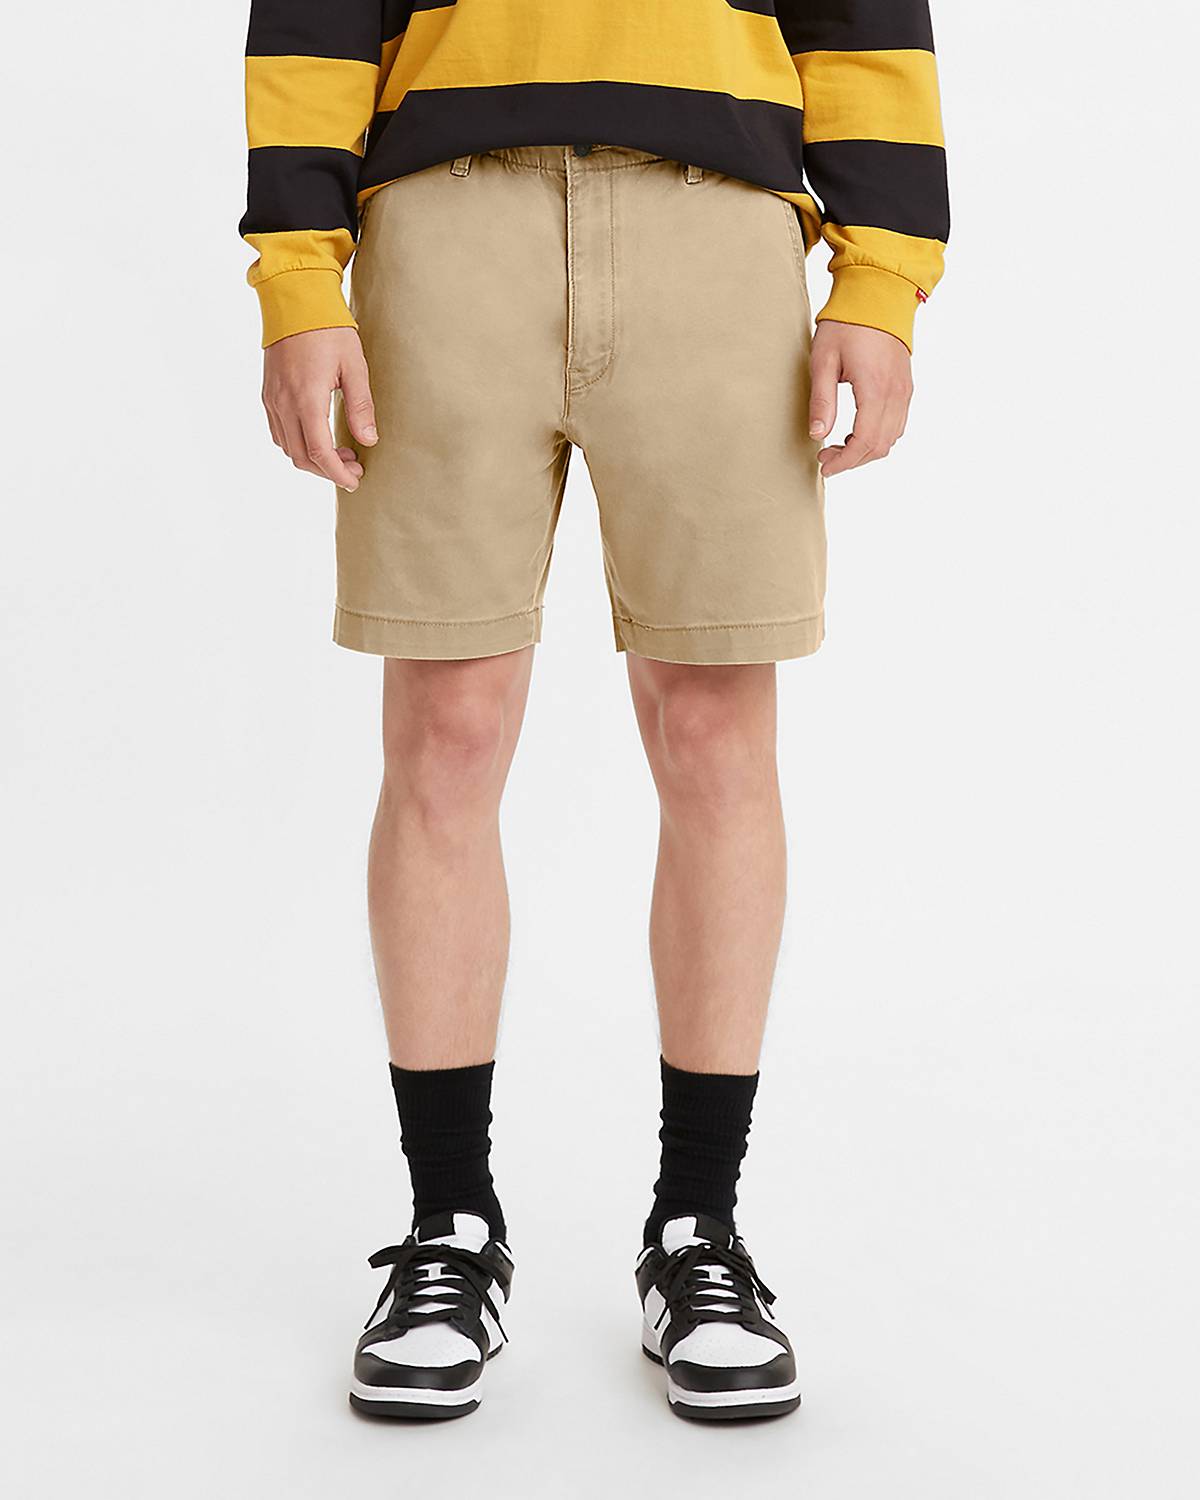 Men's Multi-color Shorts